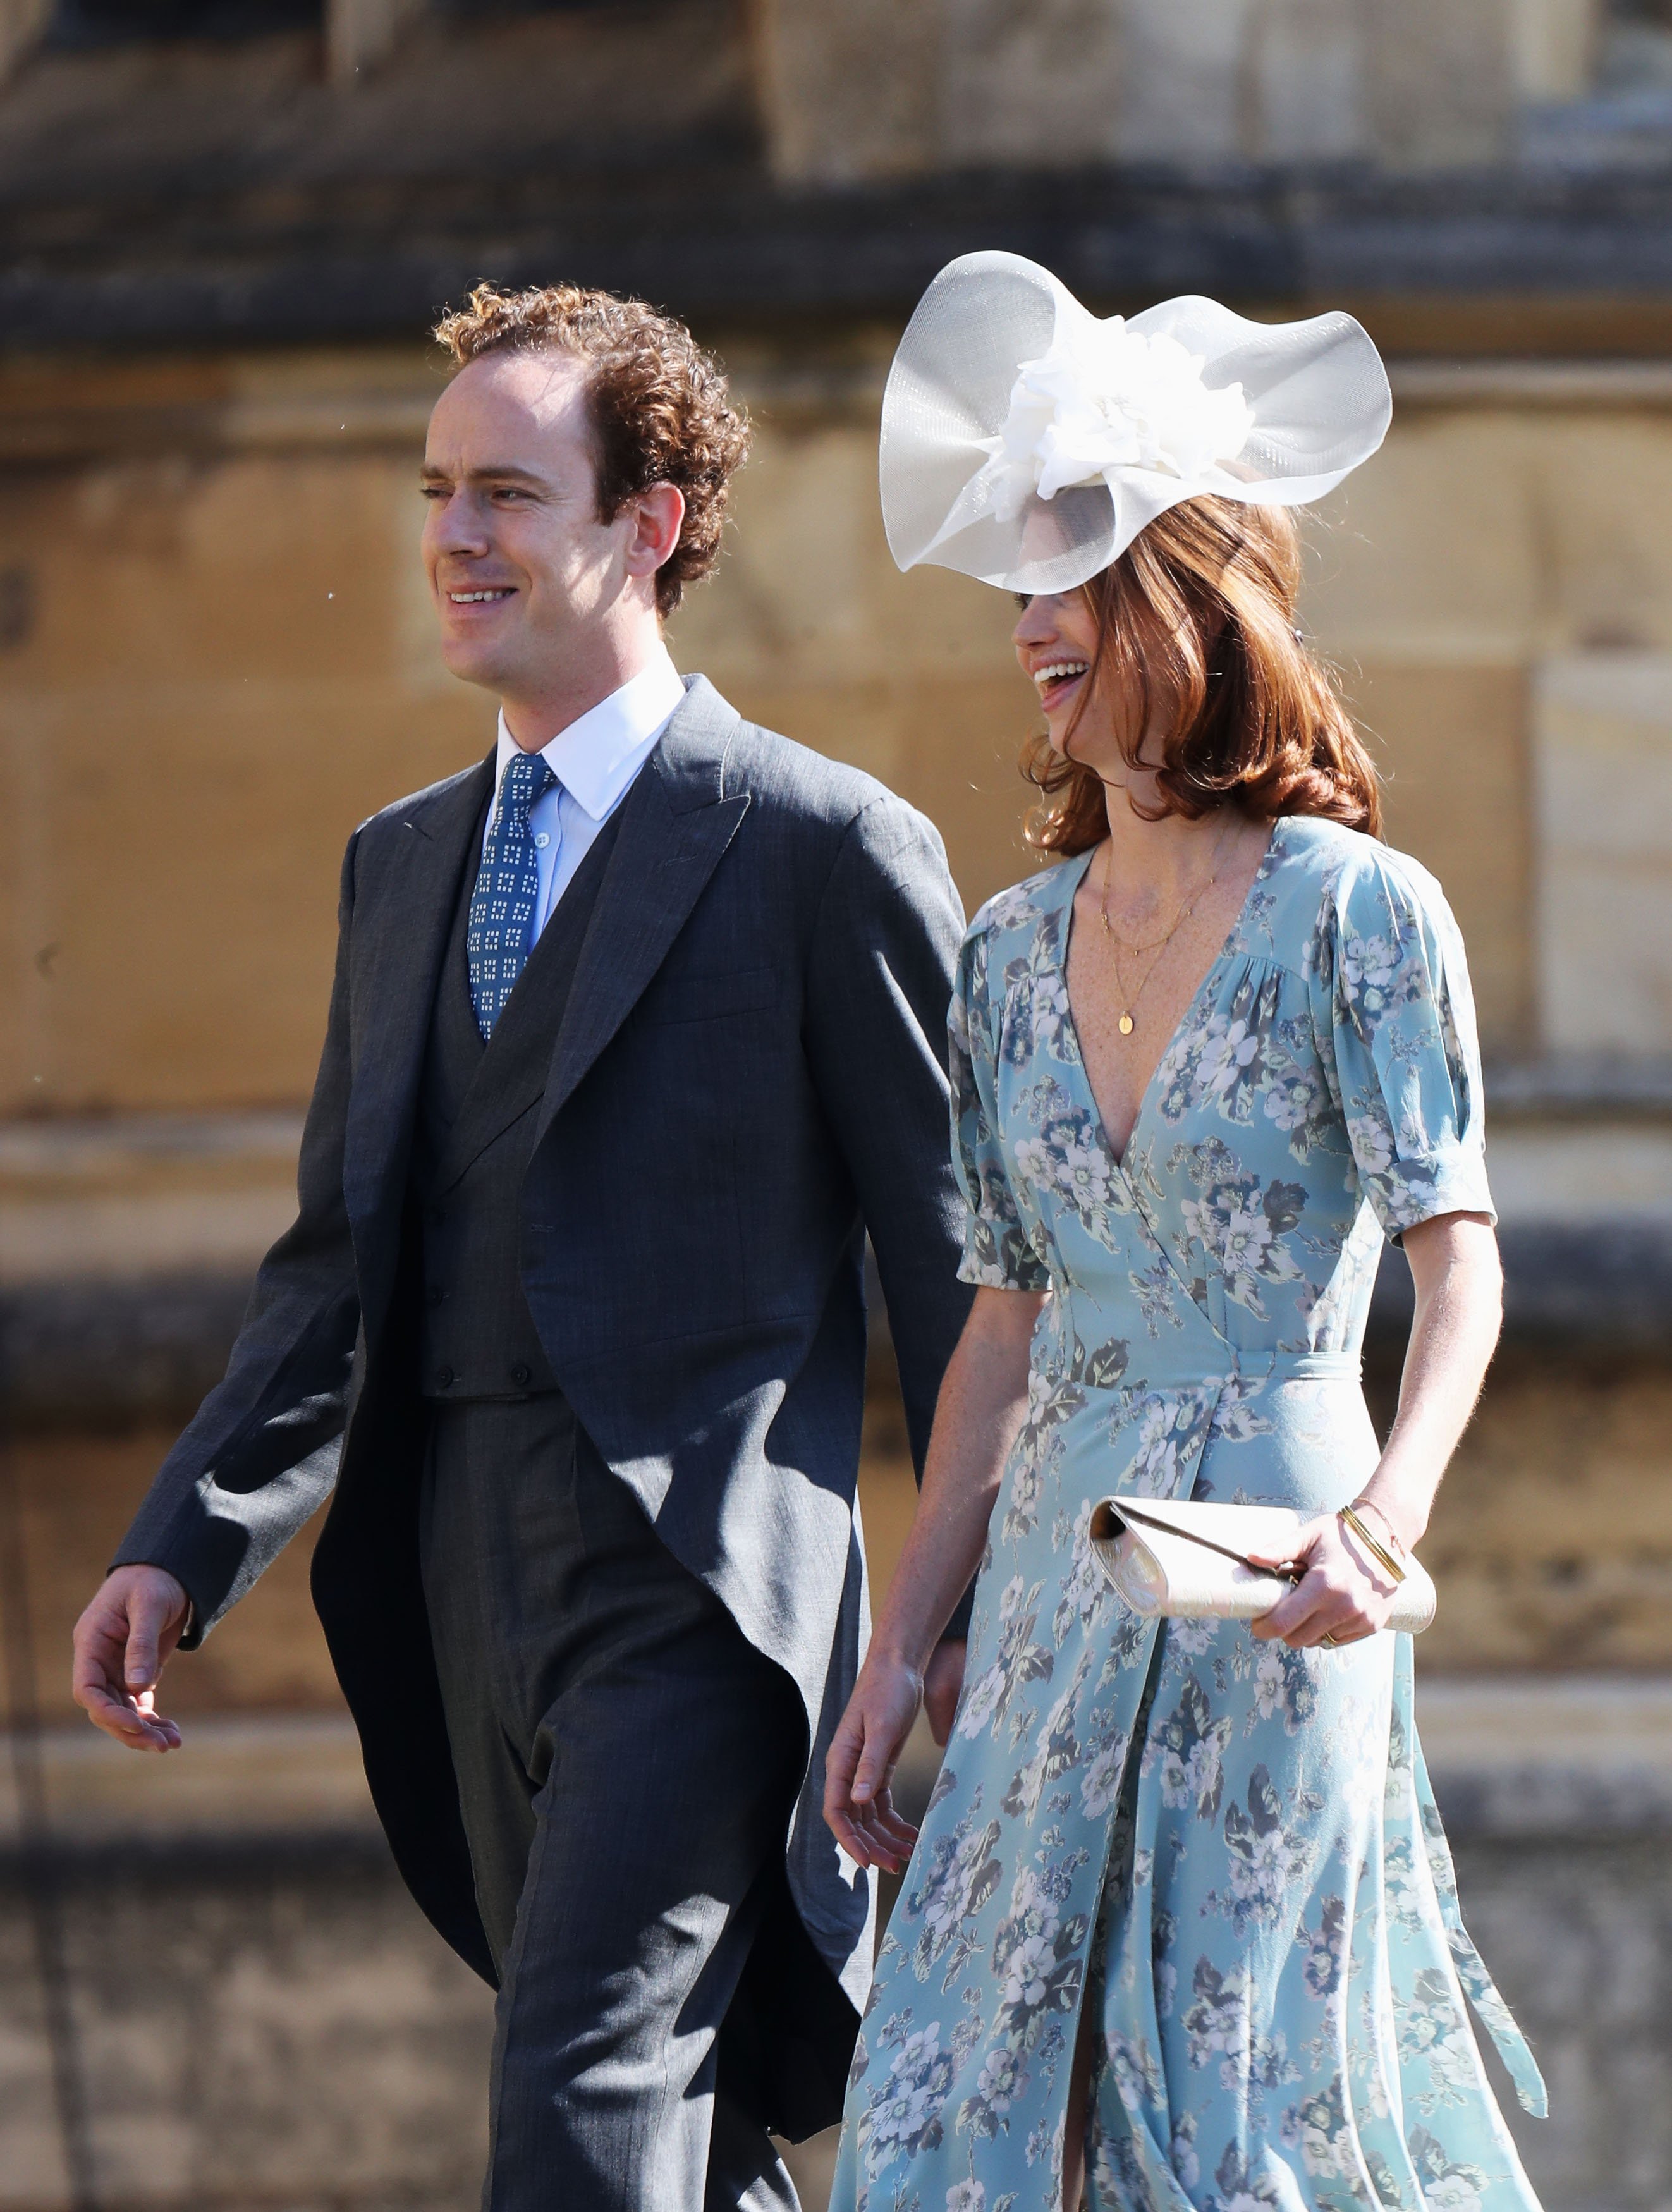 Tom Inskip et Lara Inskip arrivent au mariage du prince Harry et de Meghan Markle à la chapelle Saint-Georges du château de Windsor, le 19 mai 2018 à Windsor, en Angleterre. | Source : Getty Images